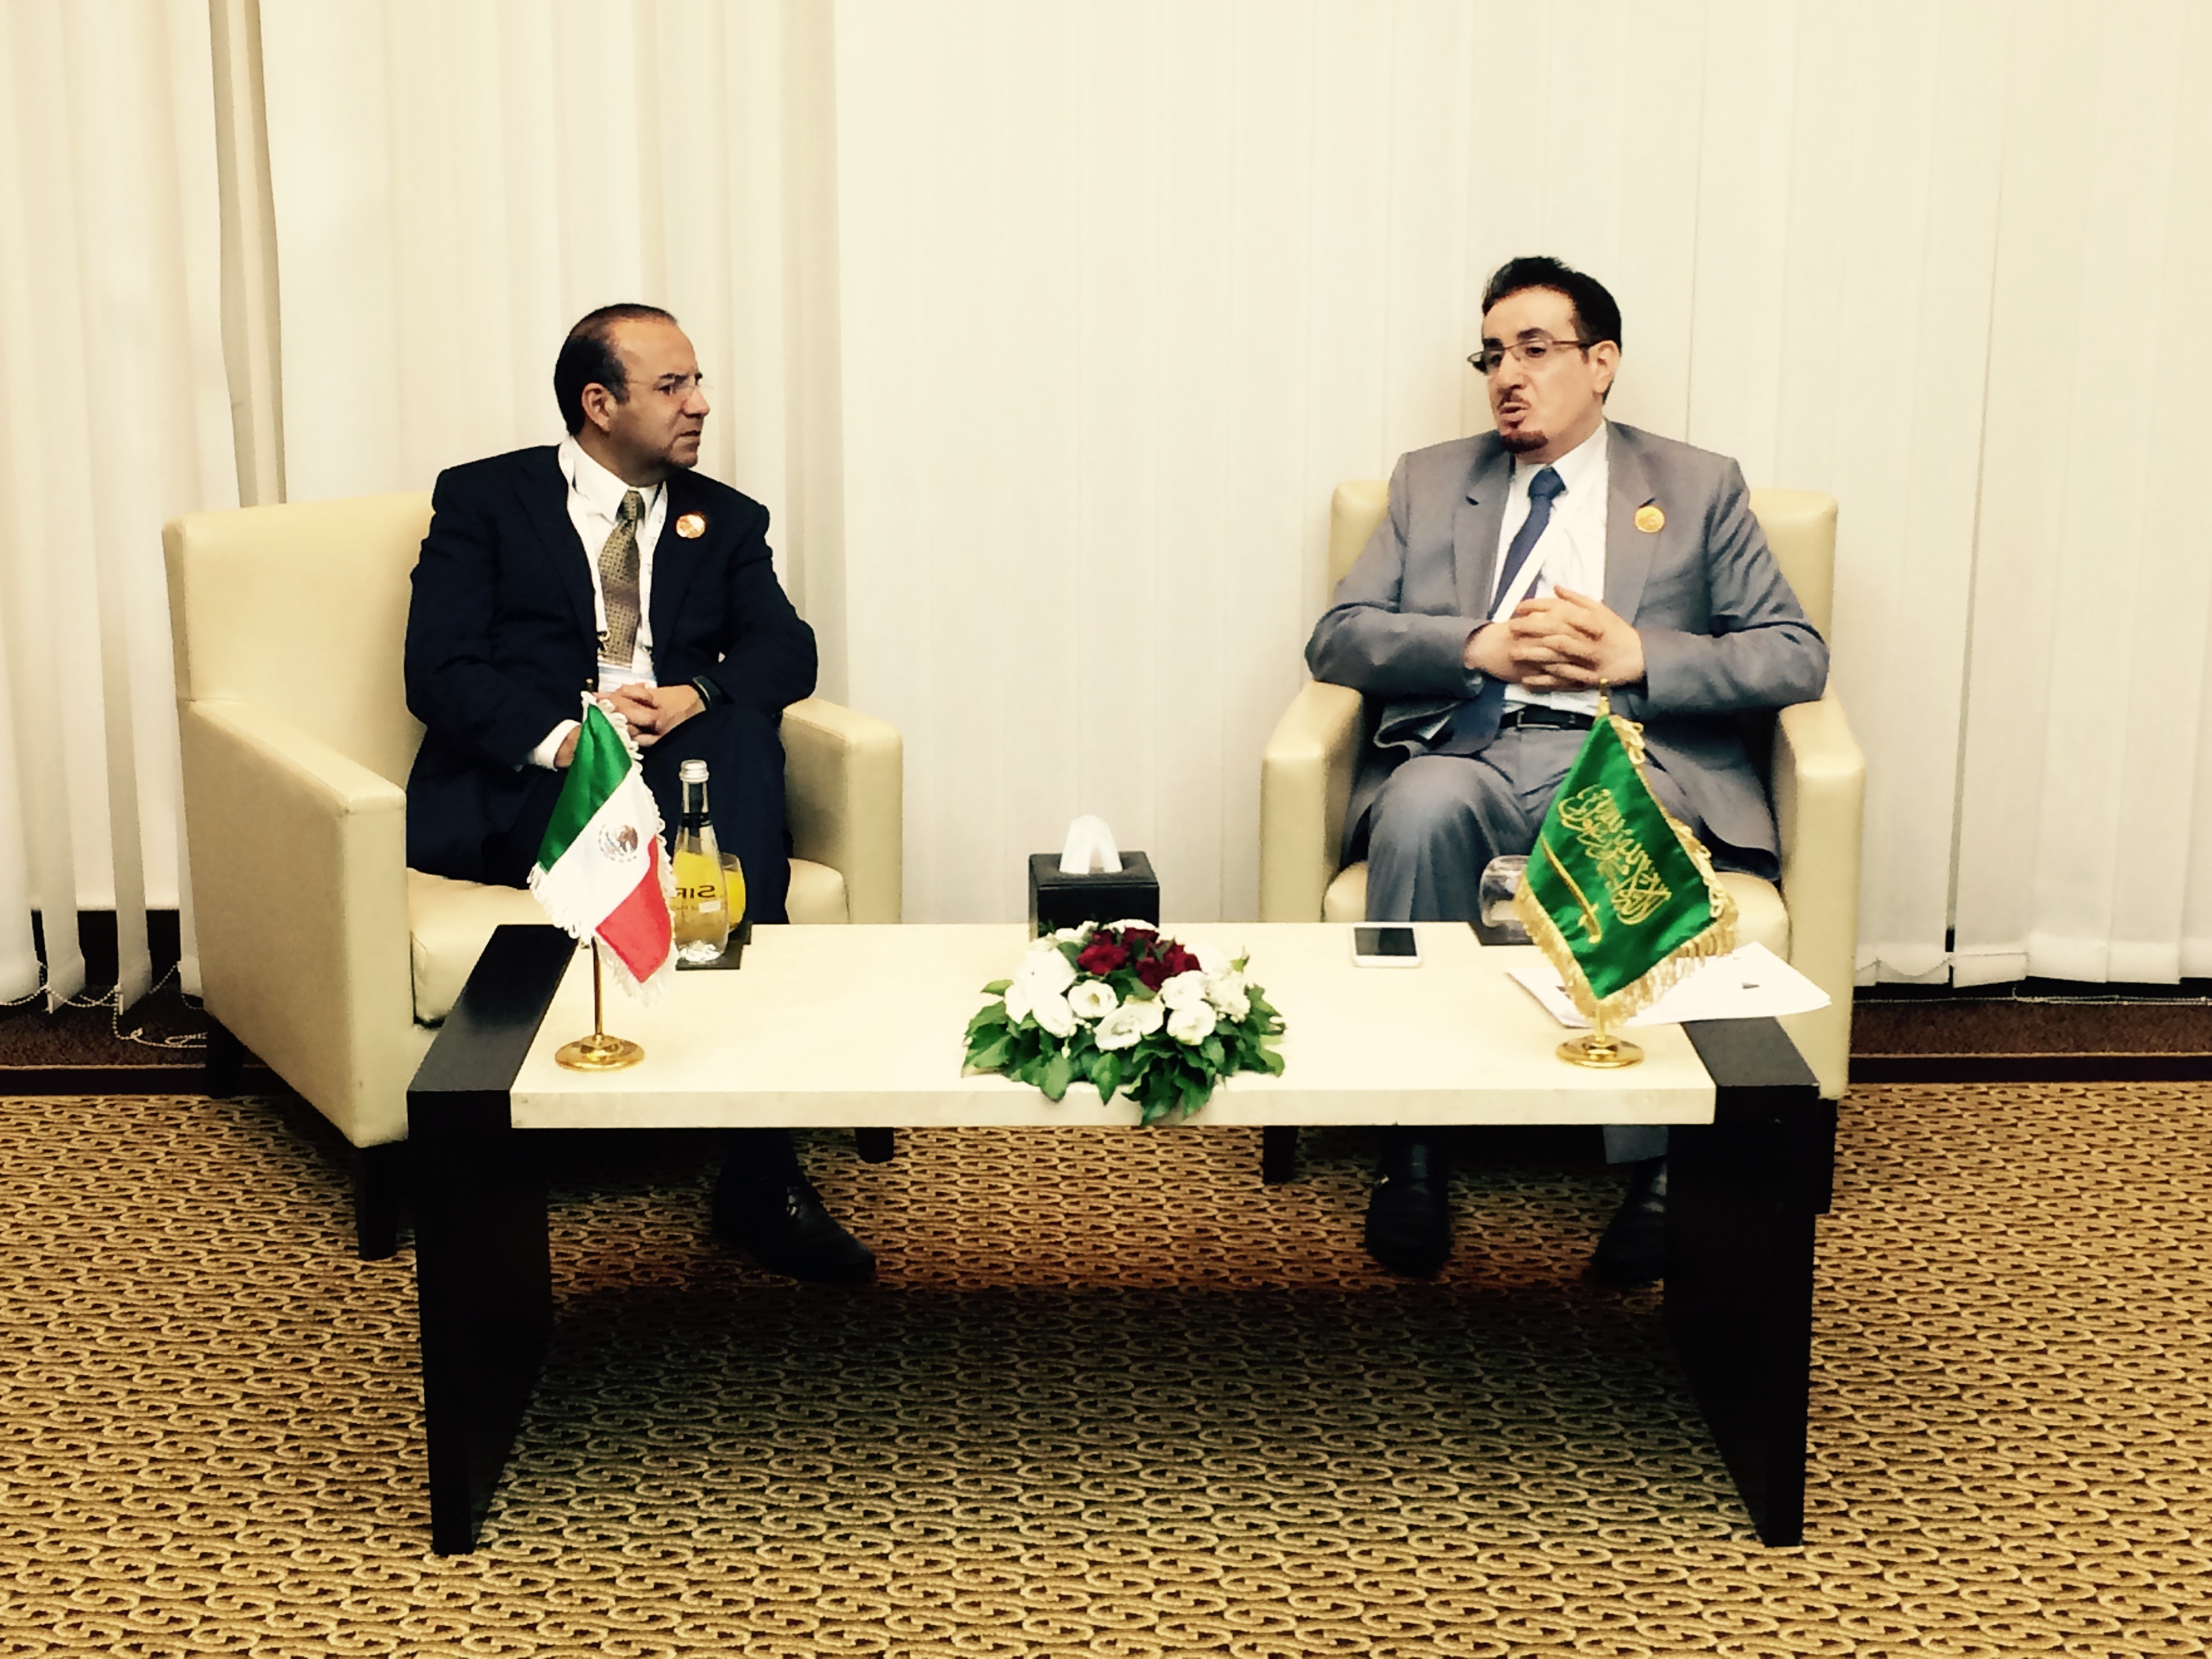 El Secretario Navarrete Prida, durante su reunión con el Ministro de Trabajo de Arabia Saudita, Mufrej al Haqbani.